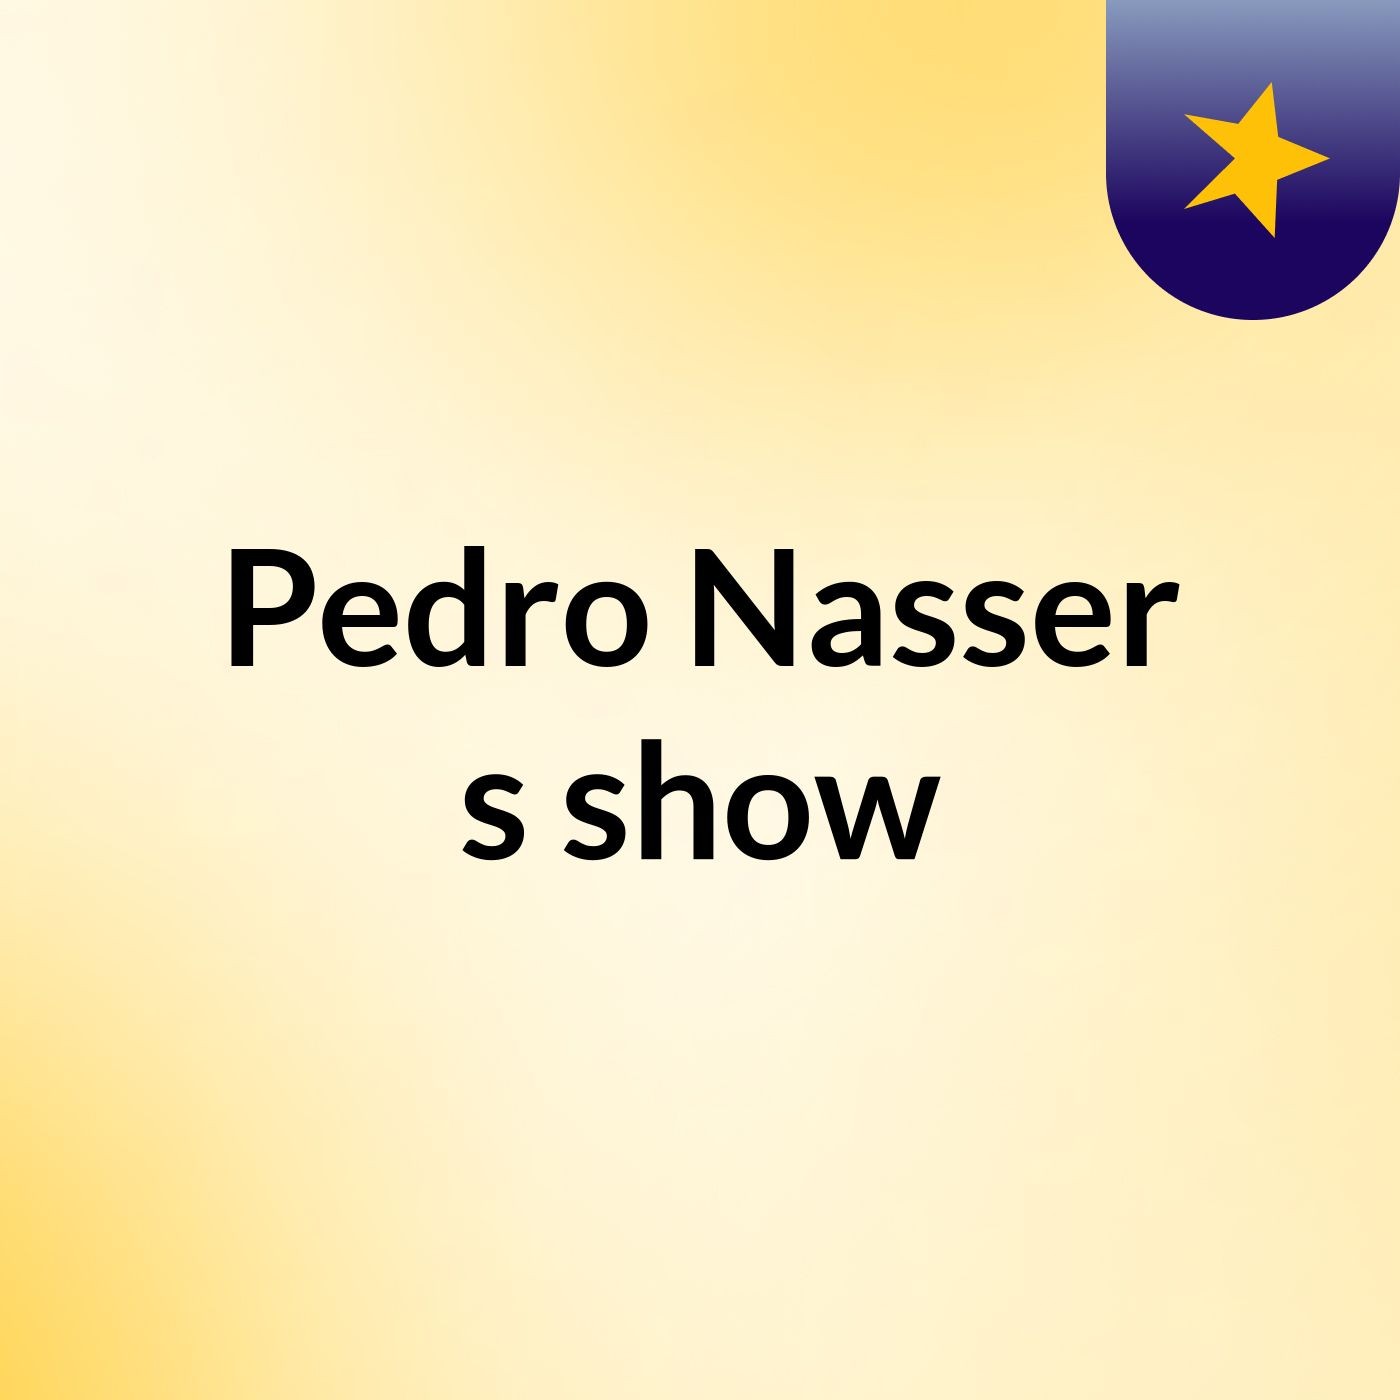 Pedro Nasser's show